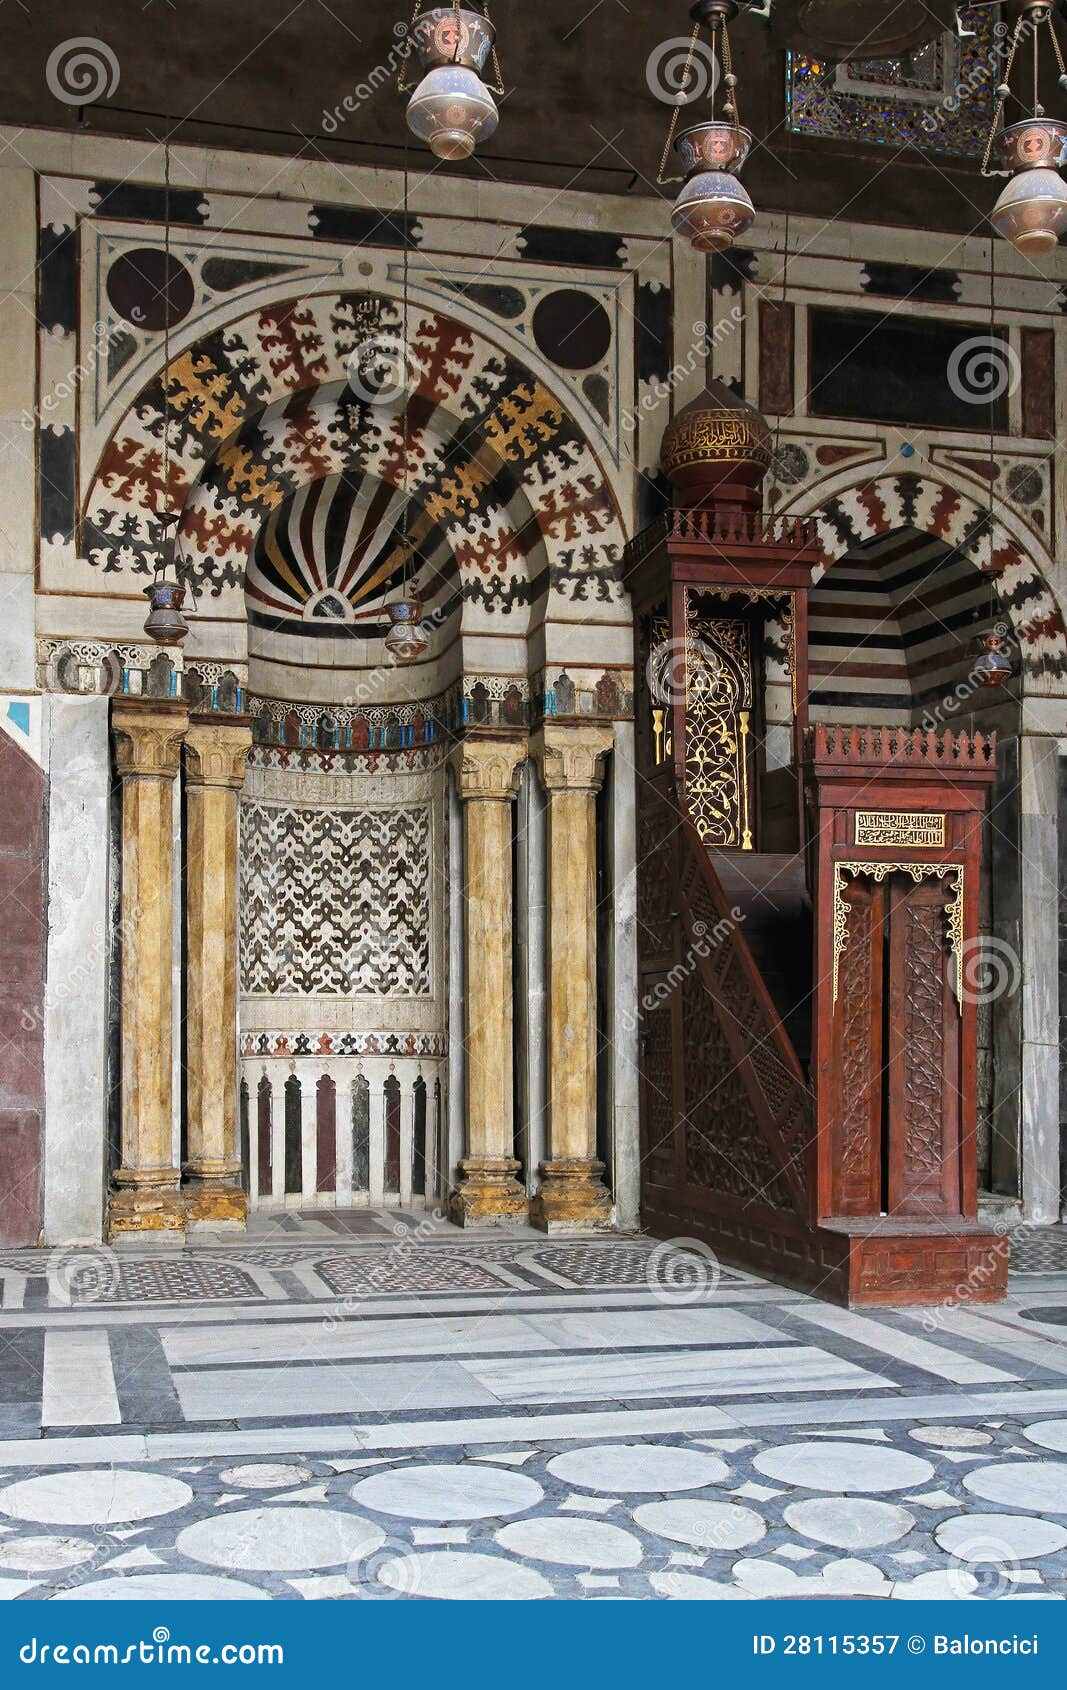 minbar in mosque